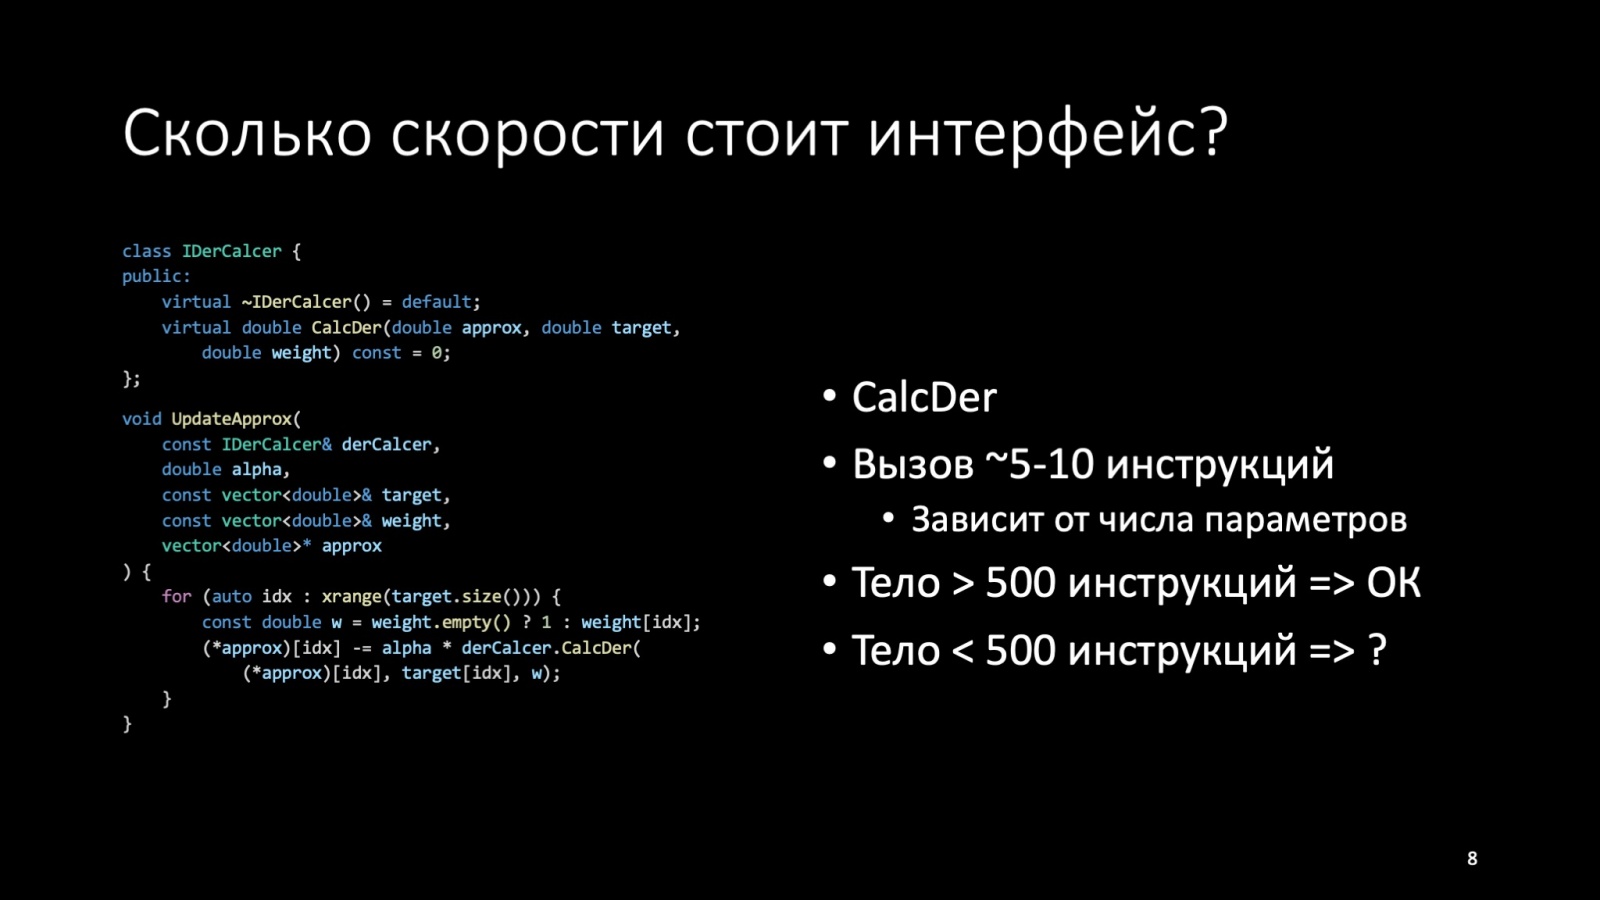 Оптимизация C++: совмещаем скорость и высокий уровень. Доклад Яндекса - 8